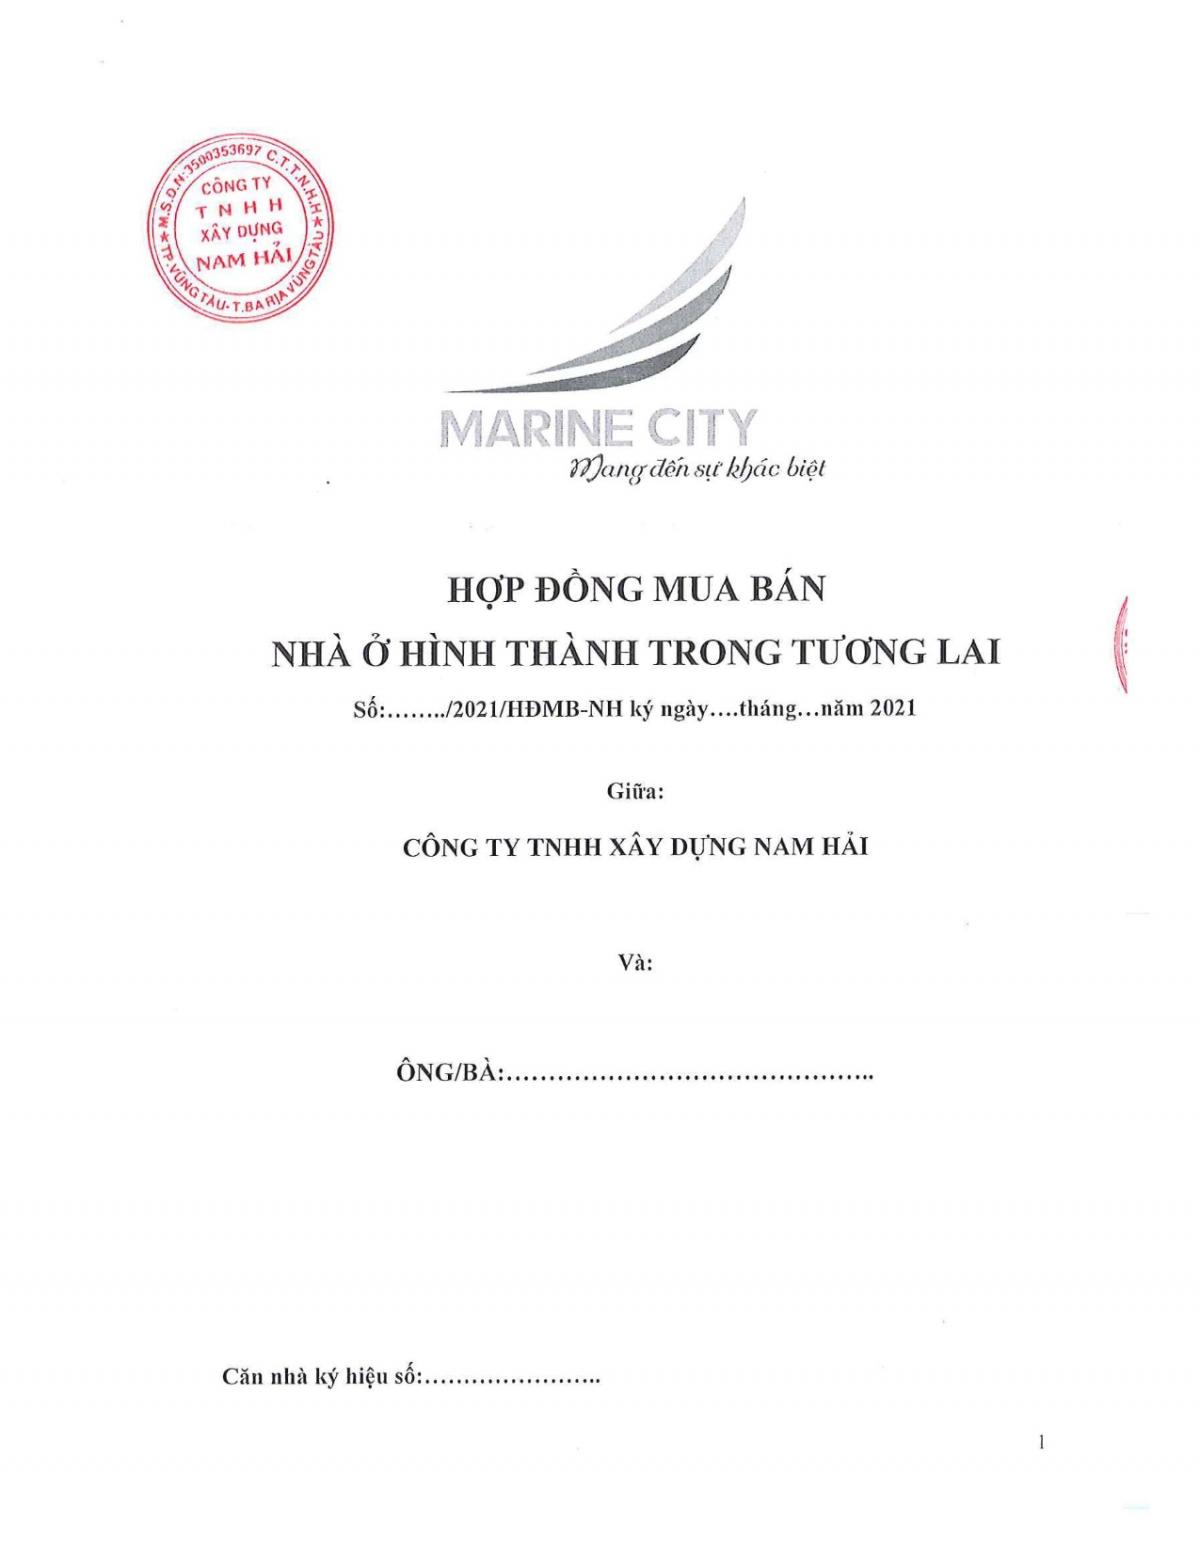 hợp đồng mua bán nhà marine city 1